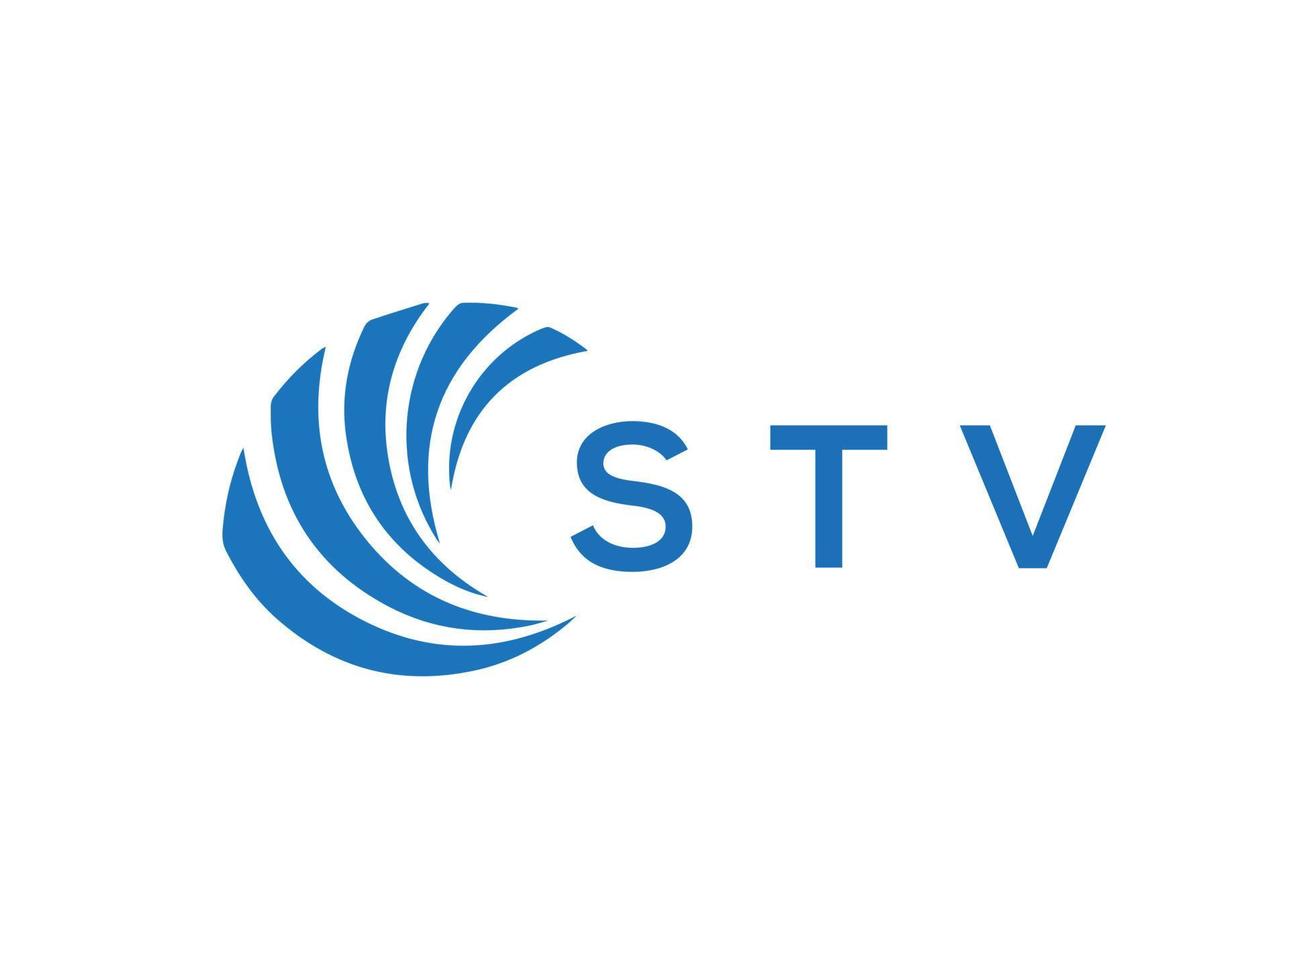 televisión letra logo diseño en blanco antecedentes. televisión creativo circulo letra logo concepto. televisión letra diseño. vector